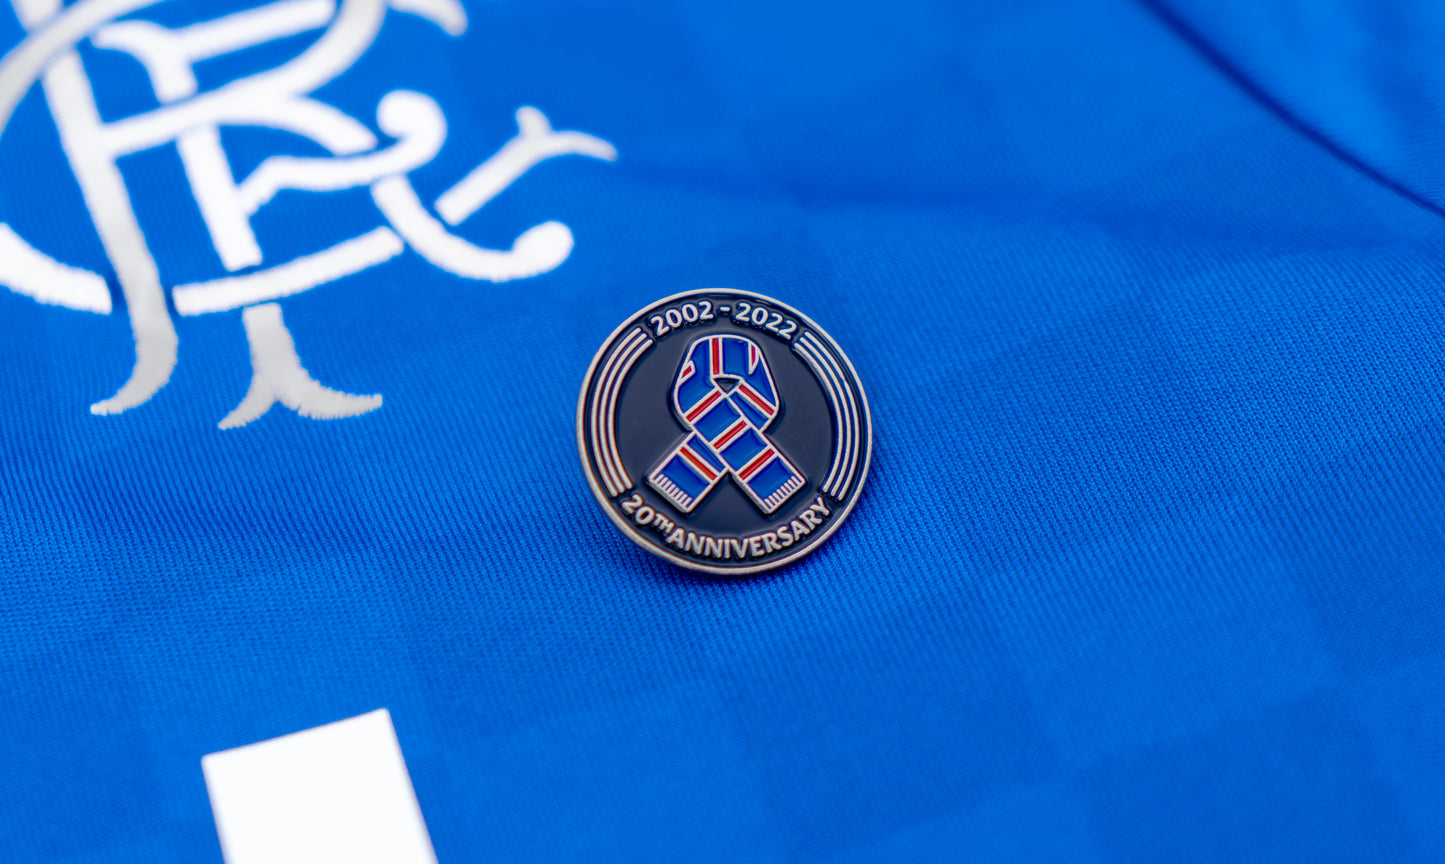 20th Anniversary RCF Pin Badge